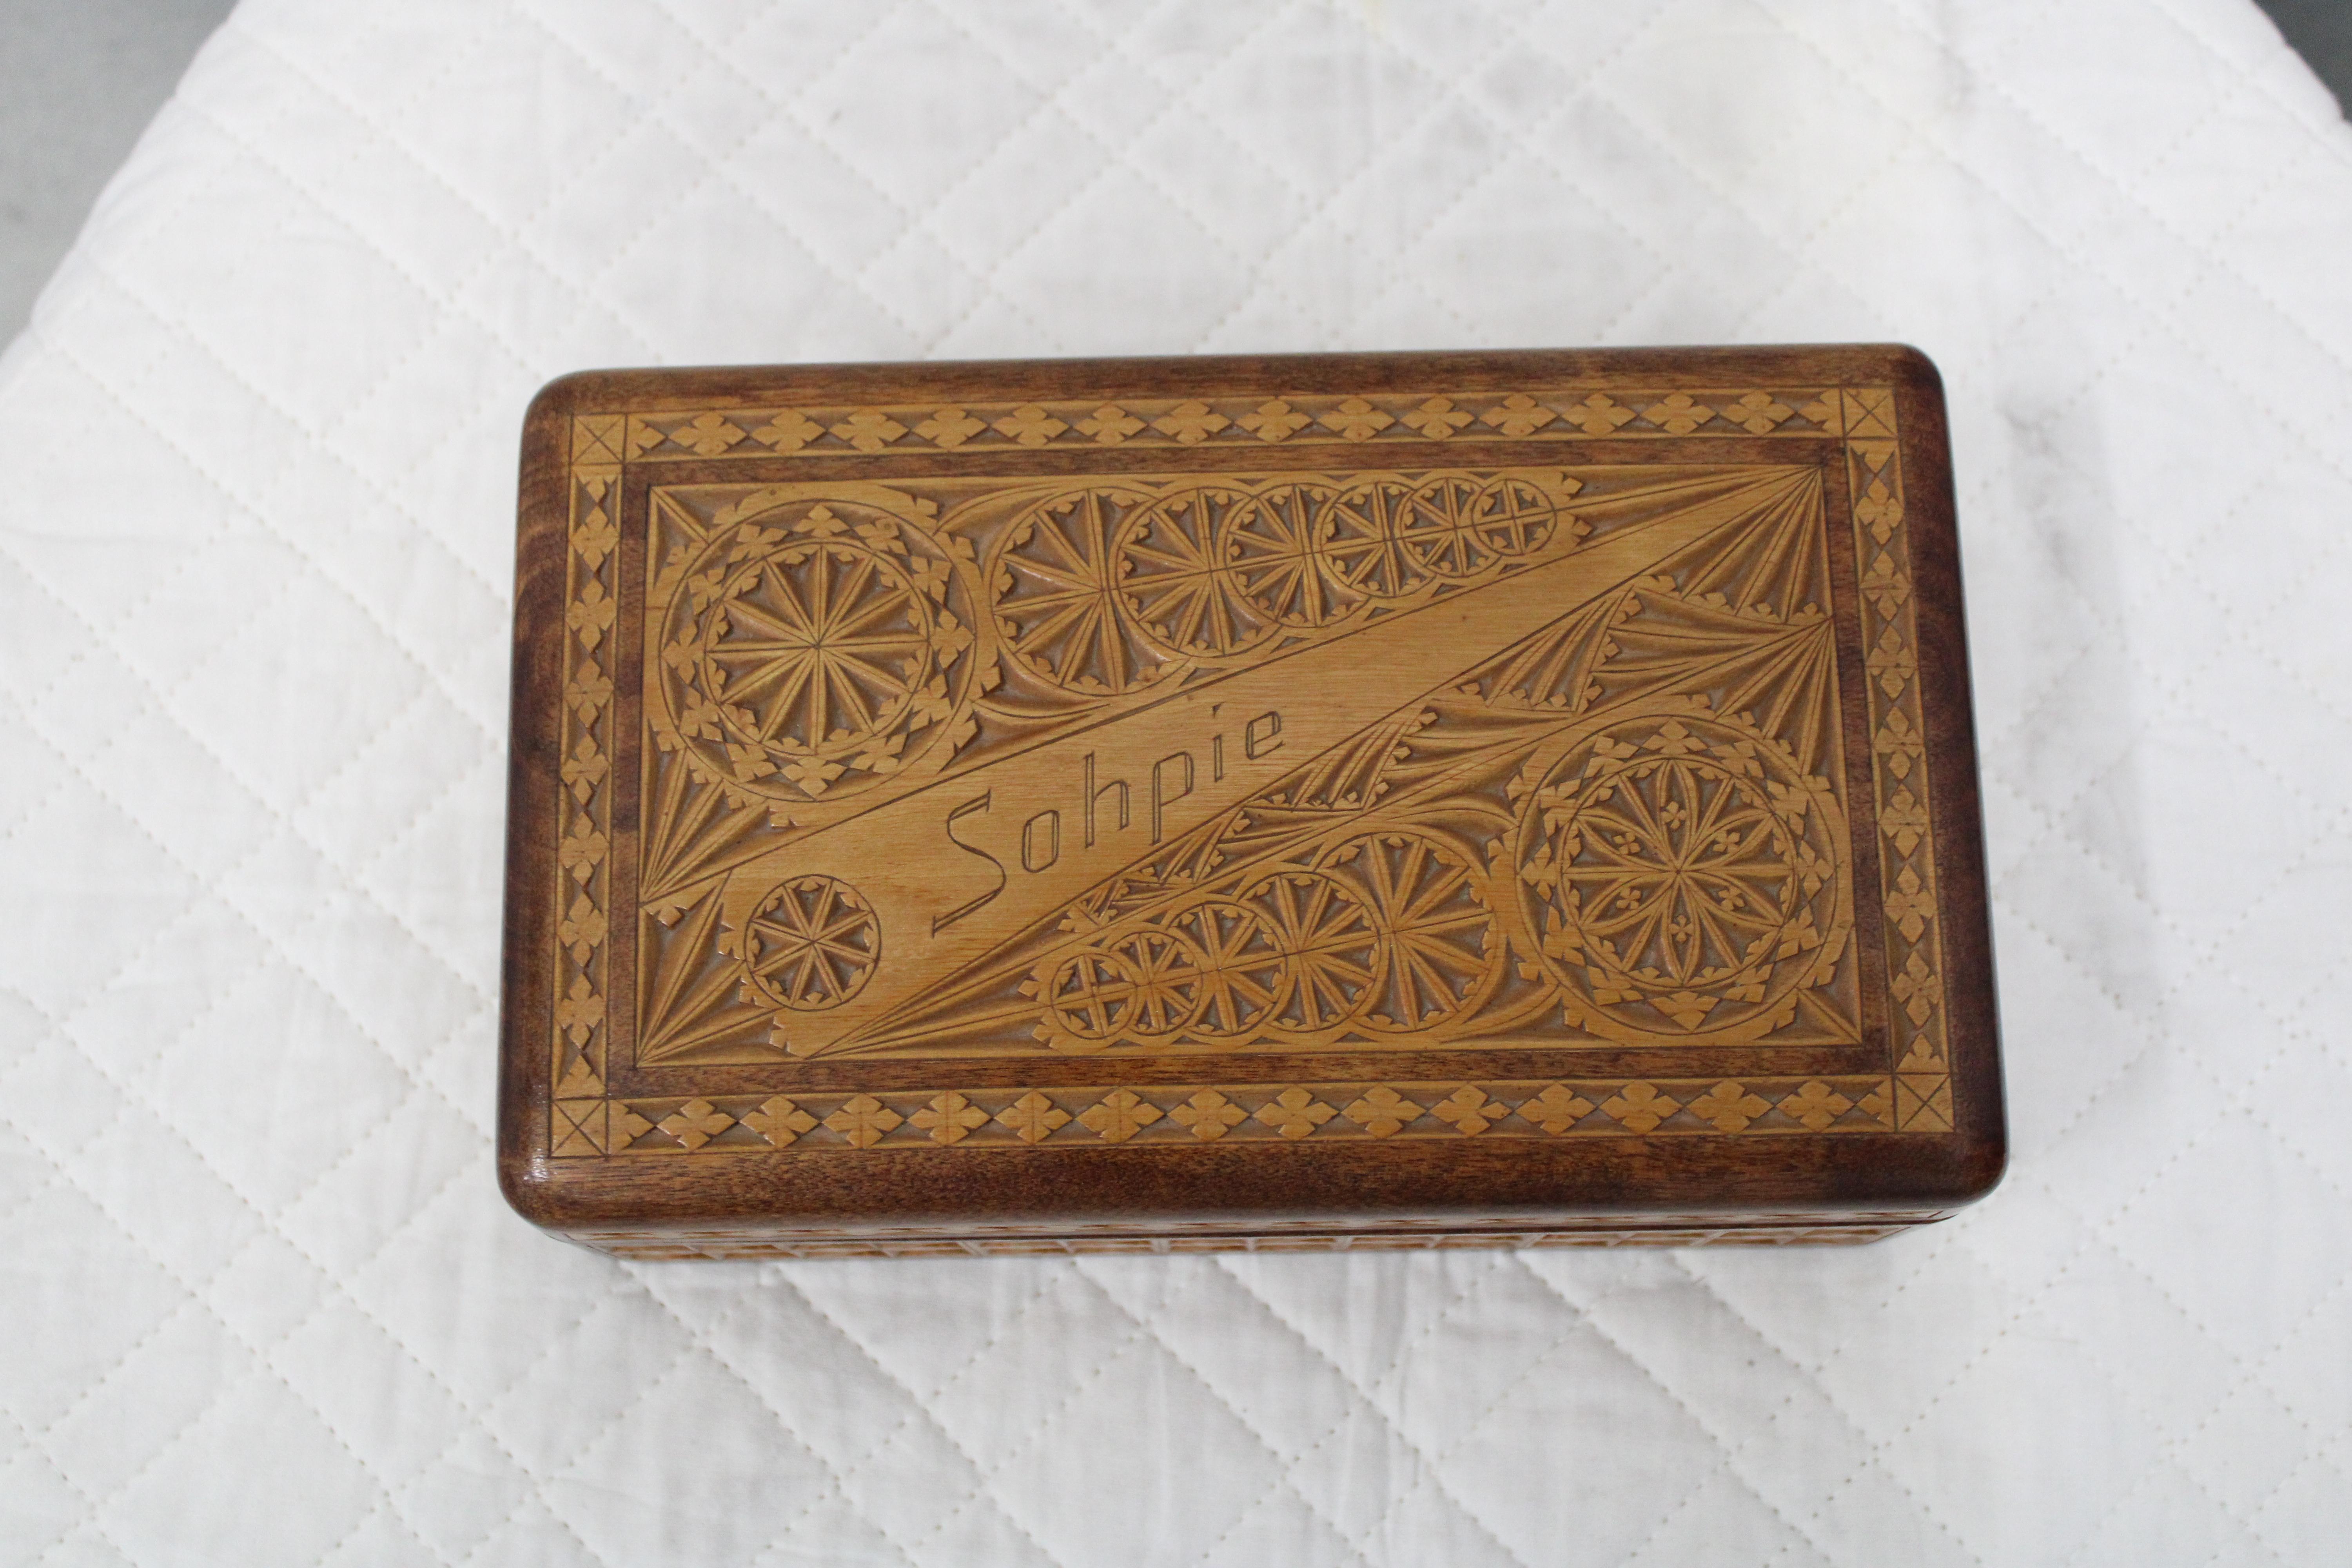 C. 20th Century

Hand carved Folk Art box w/the name Sohpie.  Velvet lined.